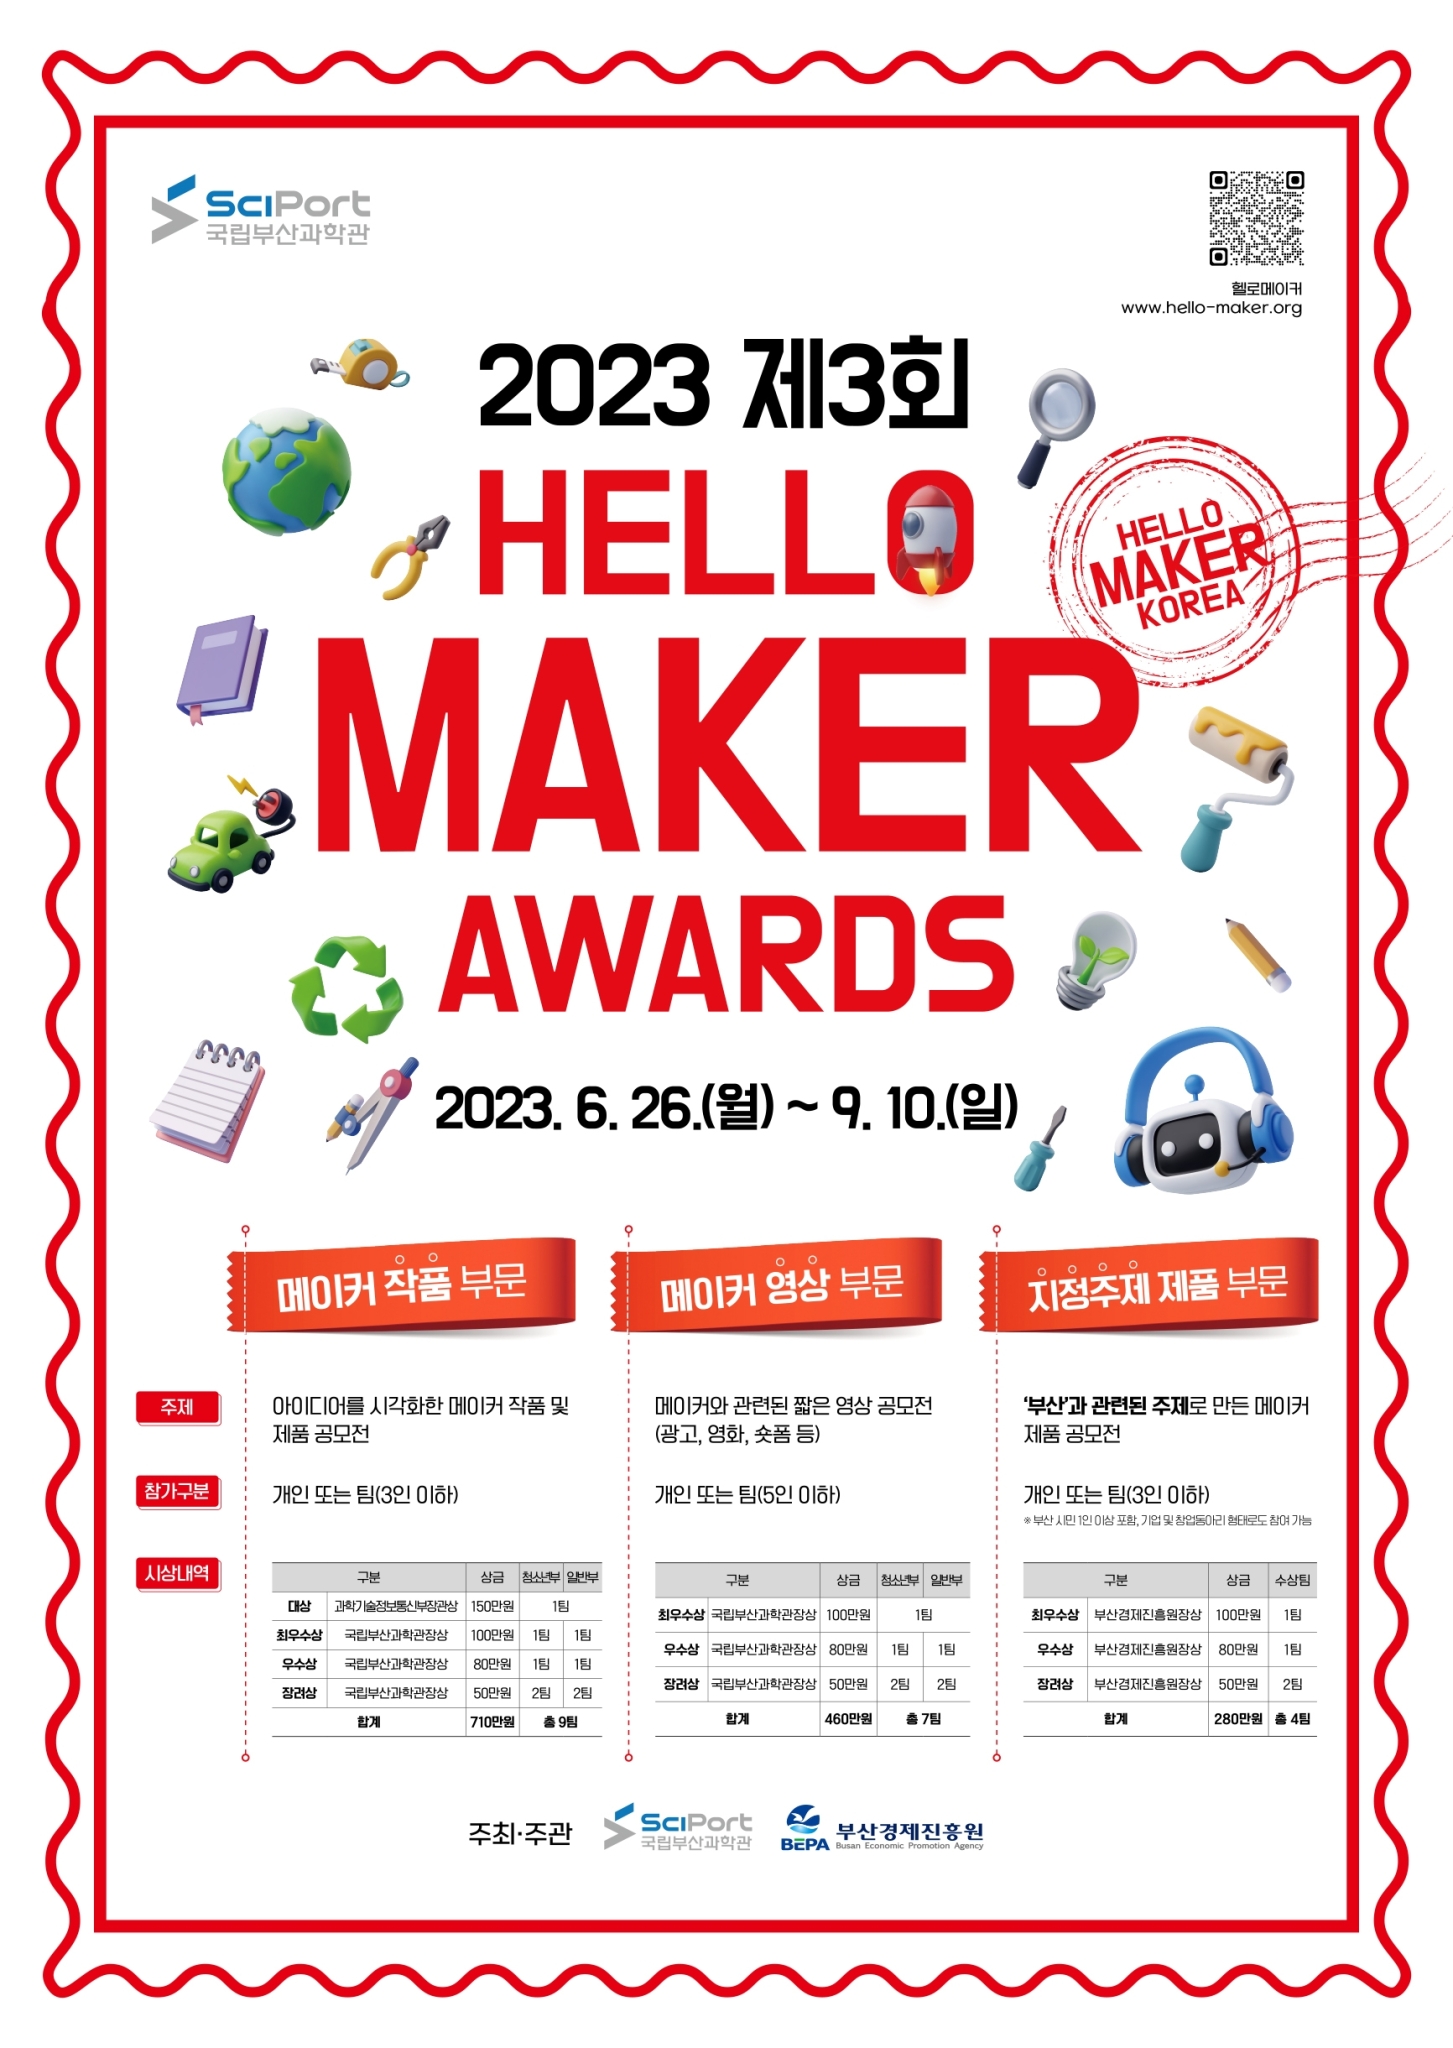 [한국게임과학고등학교-5411 (첨부) 국립부산과학관 디지털기획팀] 붙임1. 「2023 제3회 HELLO MAKER AWARDS」 공모전 포스터